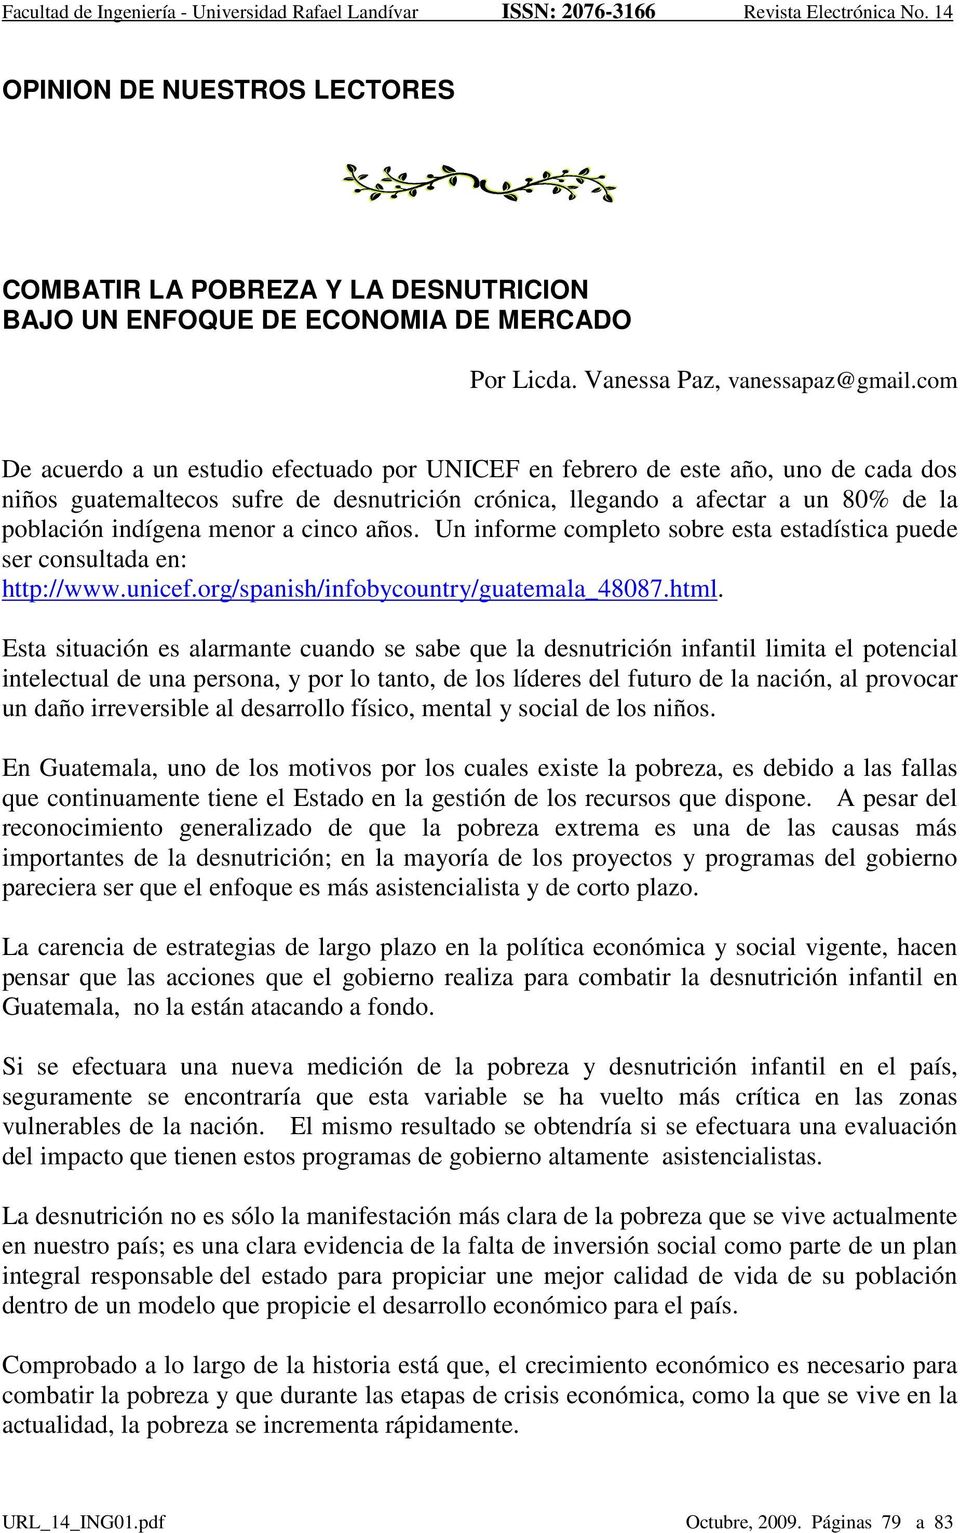 a cinco años. Un informe completo sobre esta estadística puede ser consultada en: http://www.unicef.org/spanish/infobycountry/guatemala_48087.html.